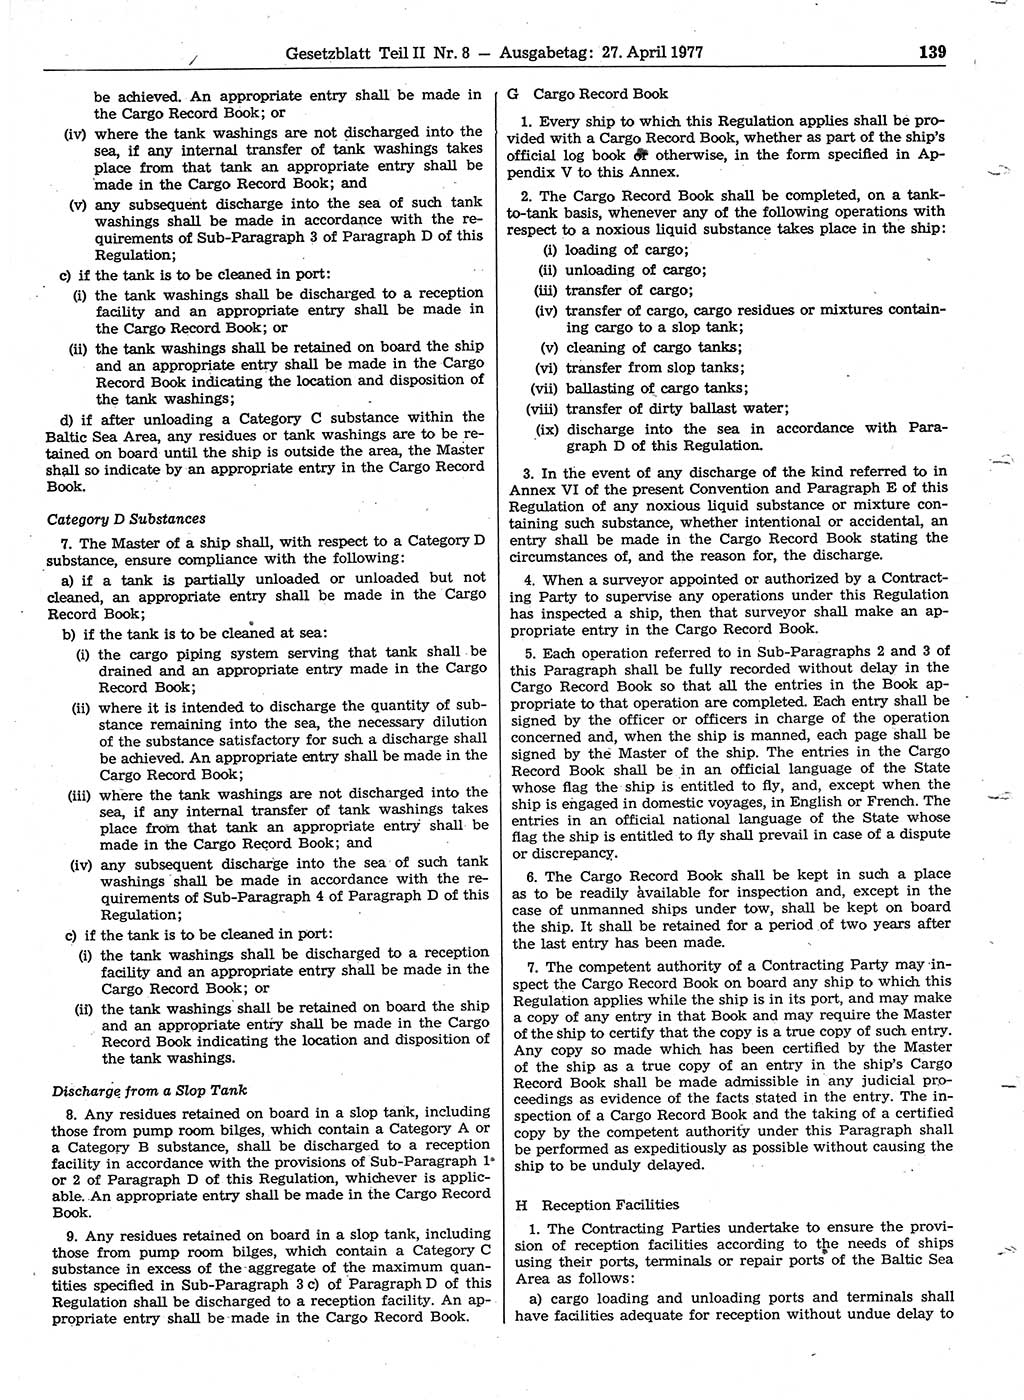 Gesetzblatt (GBl.) der Deutschen Demokratischen Republik (DDR) Teil ⅠⅠ 1977, Seite 139 (GBl. DDR ⅠⅠ 1977, S. 139)